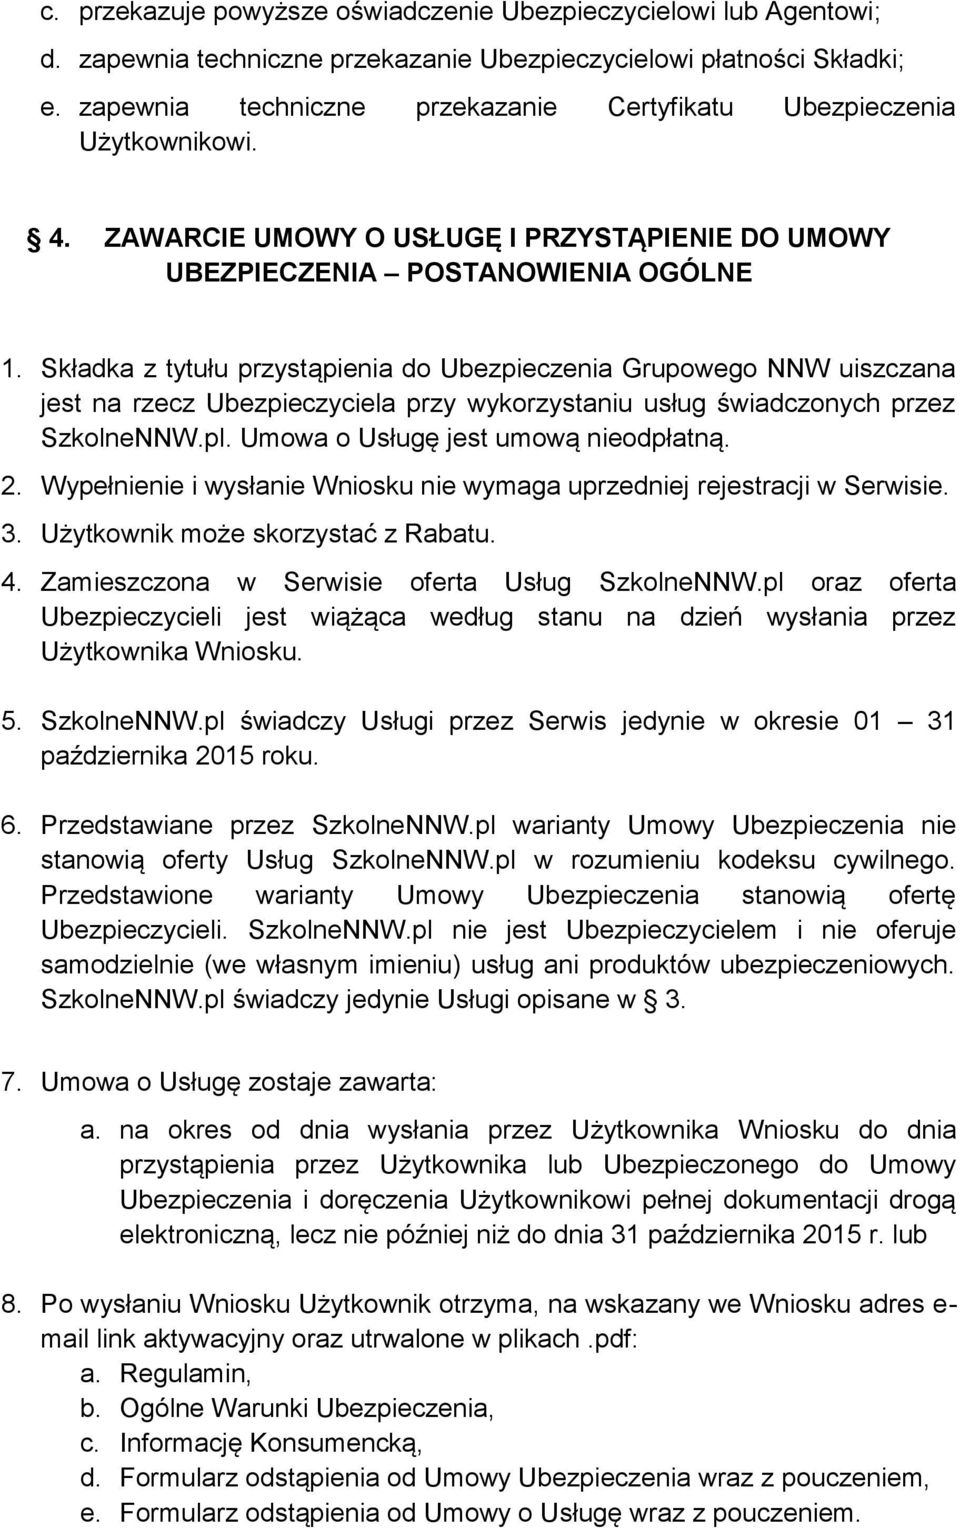 Składka z tytułu przystąpienia do Ubezpieczenia Grupowego NNW uiszczana jest na rzecz Ubezpieczyciela przy wykorzystaniu usług świadczonych przez SzkolneNNW.pl. Umowa o Usługę jest umową nieodpłatną.